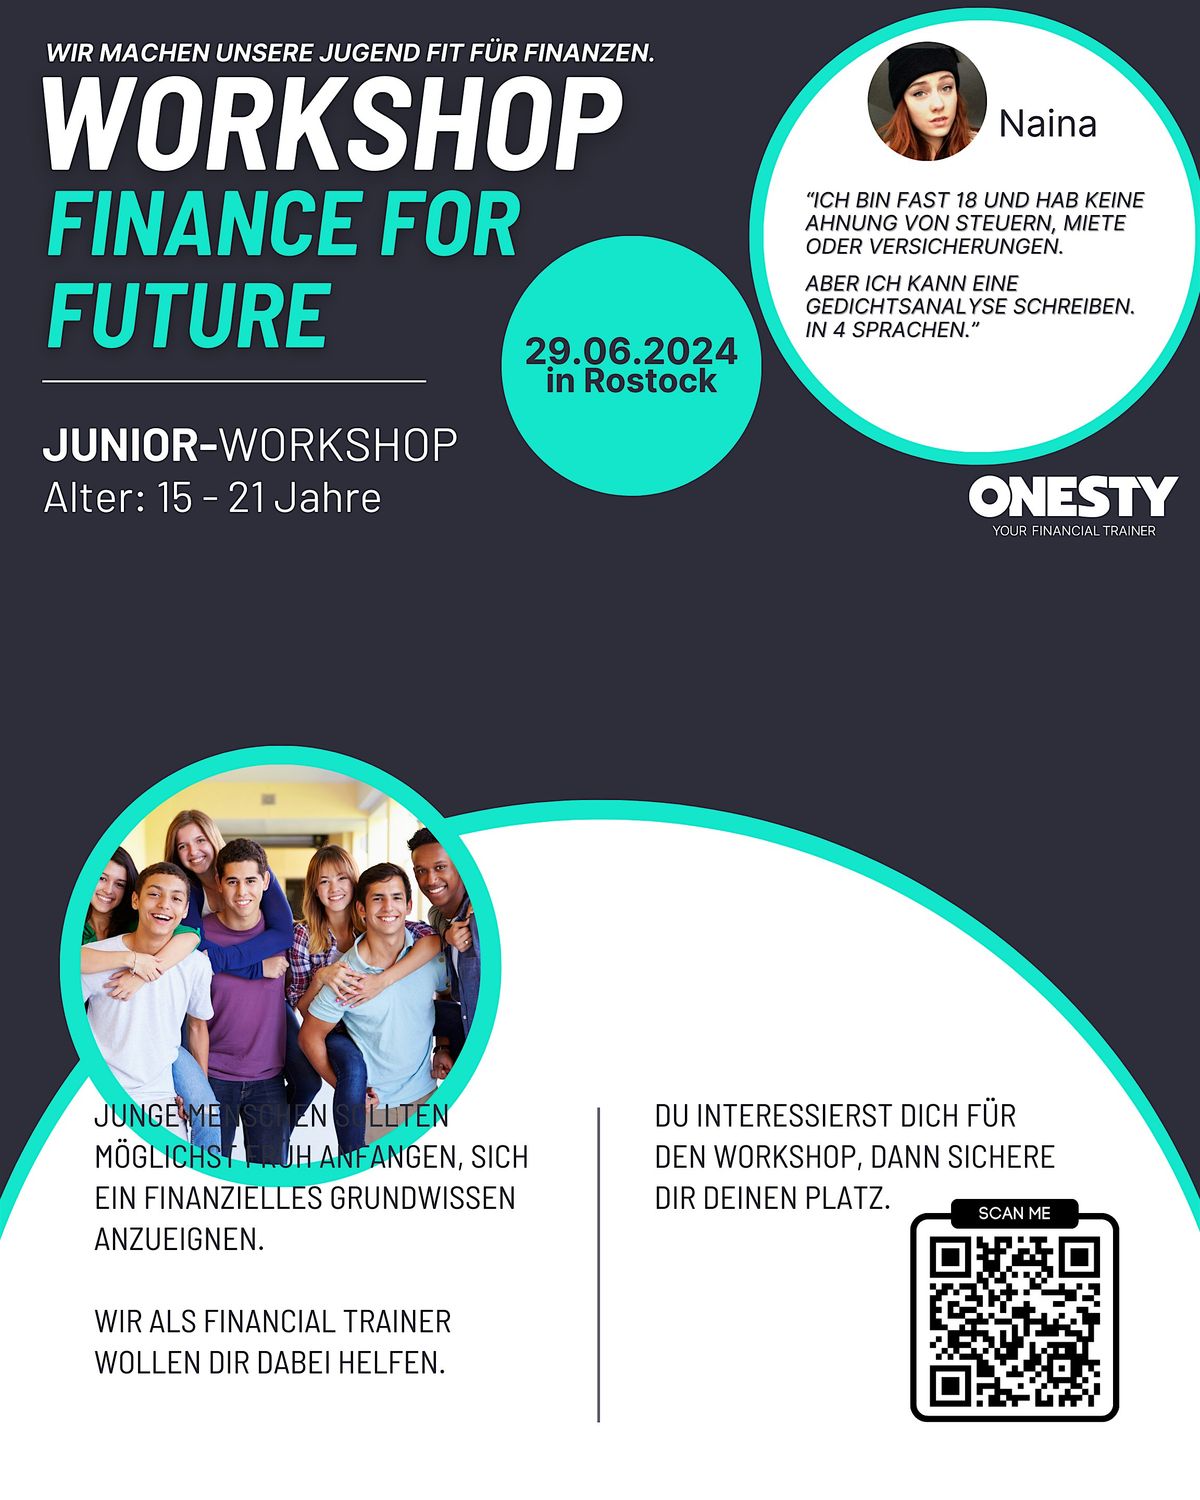 Workshop - Finance for Future